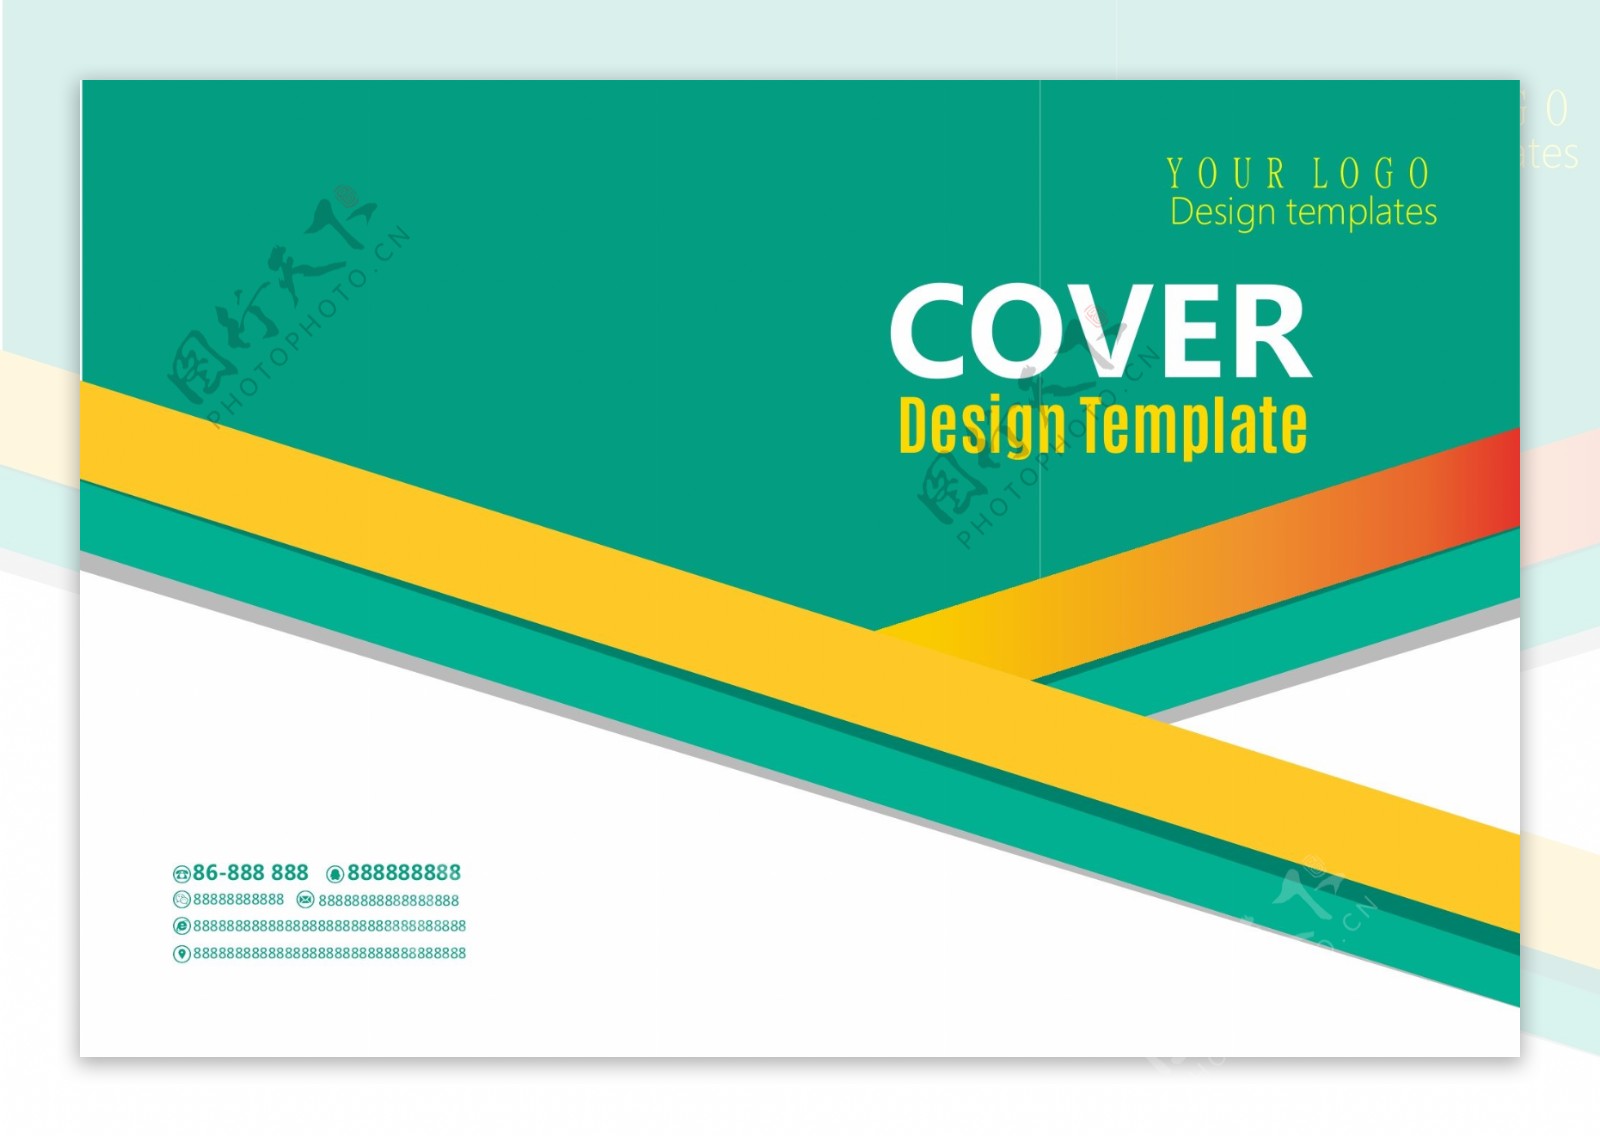 绿色创意时尚通用企业宣传画册封面设计